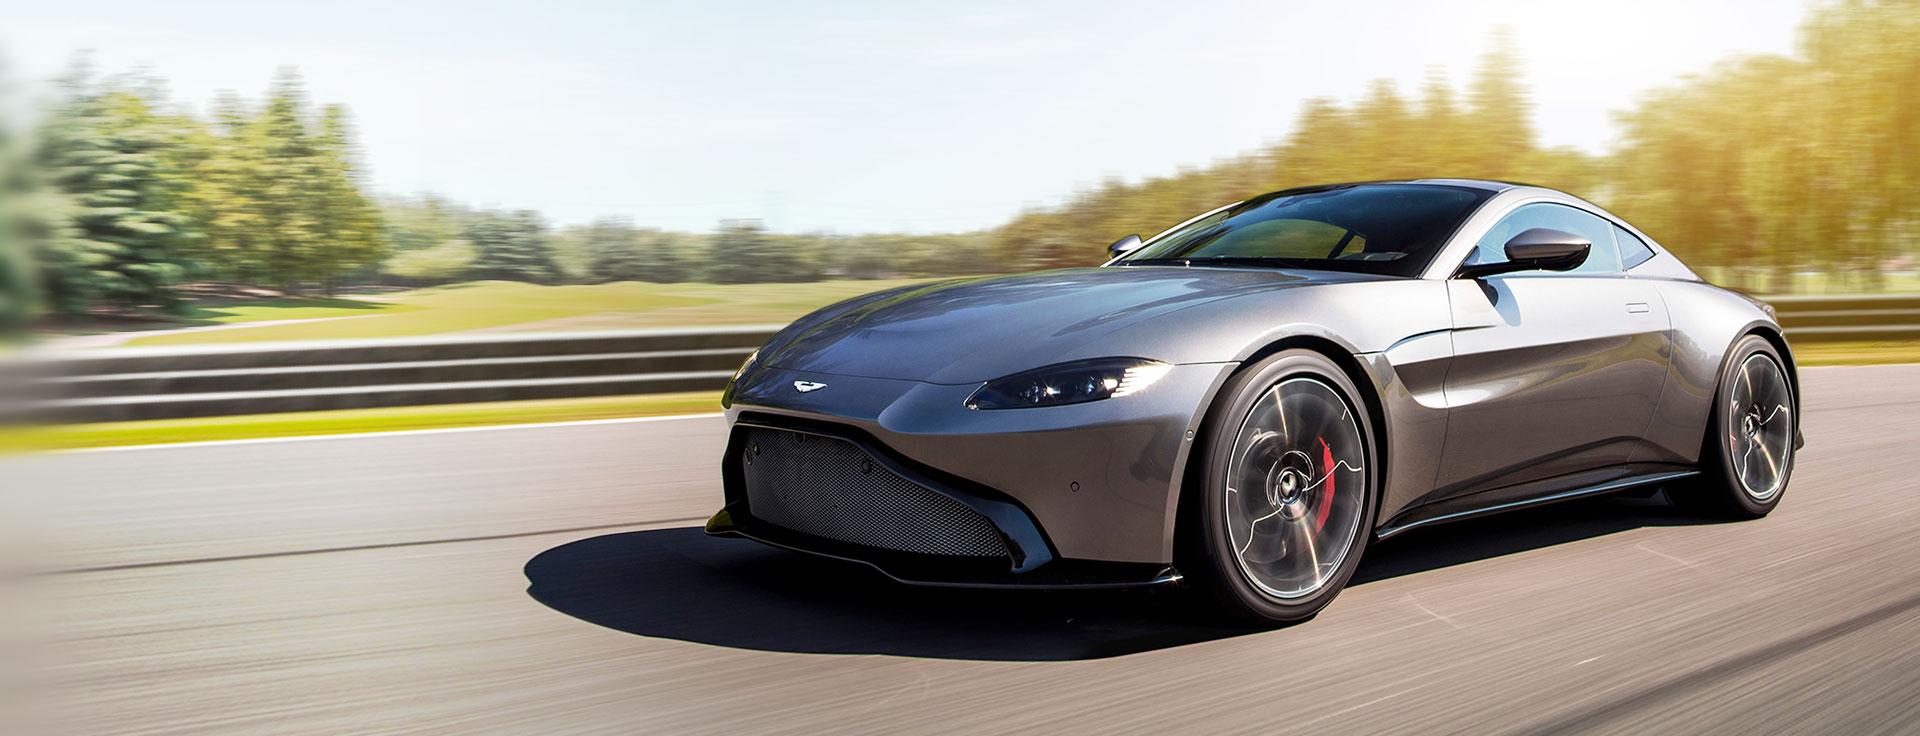  Aston Martin - Pirelli y Aston Martin